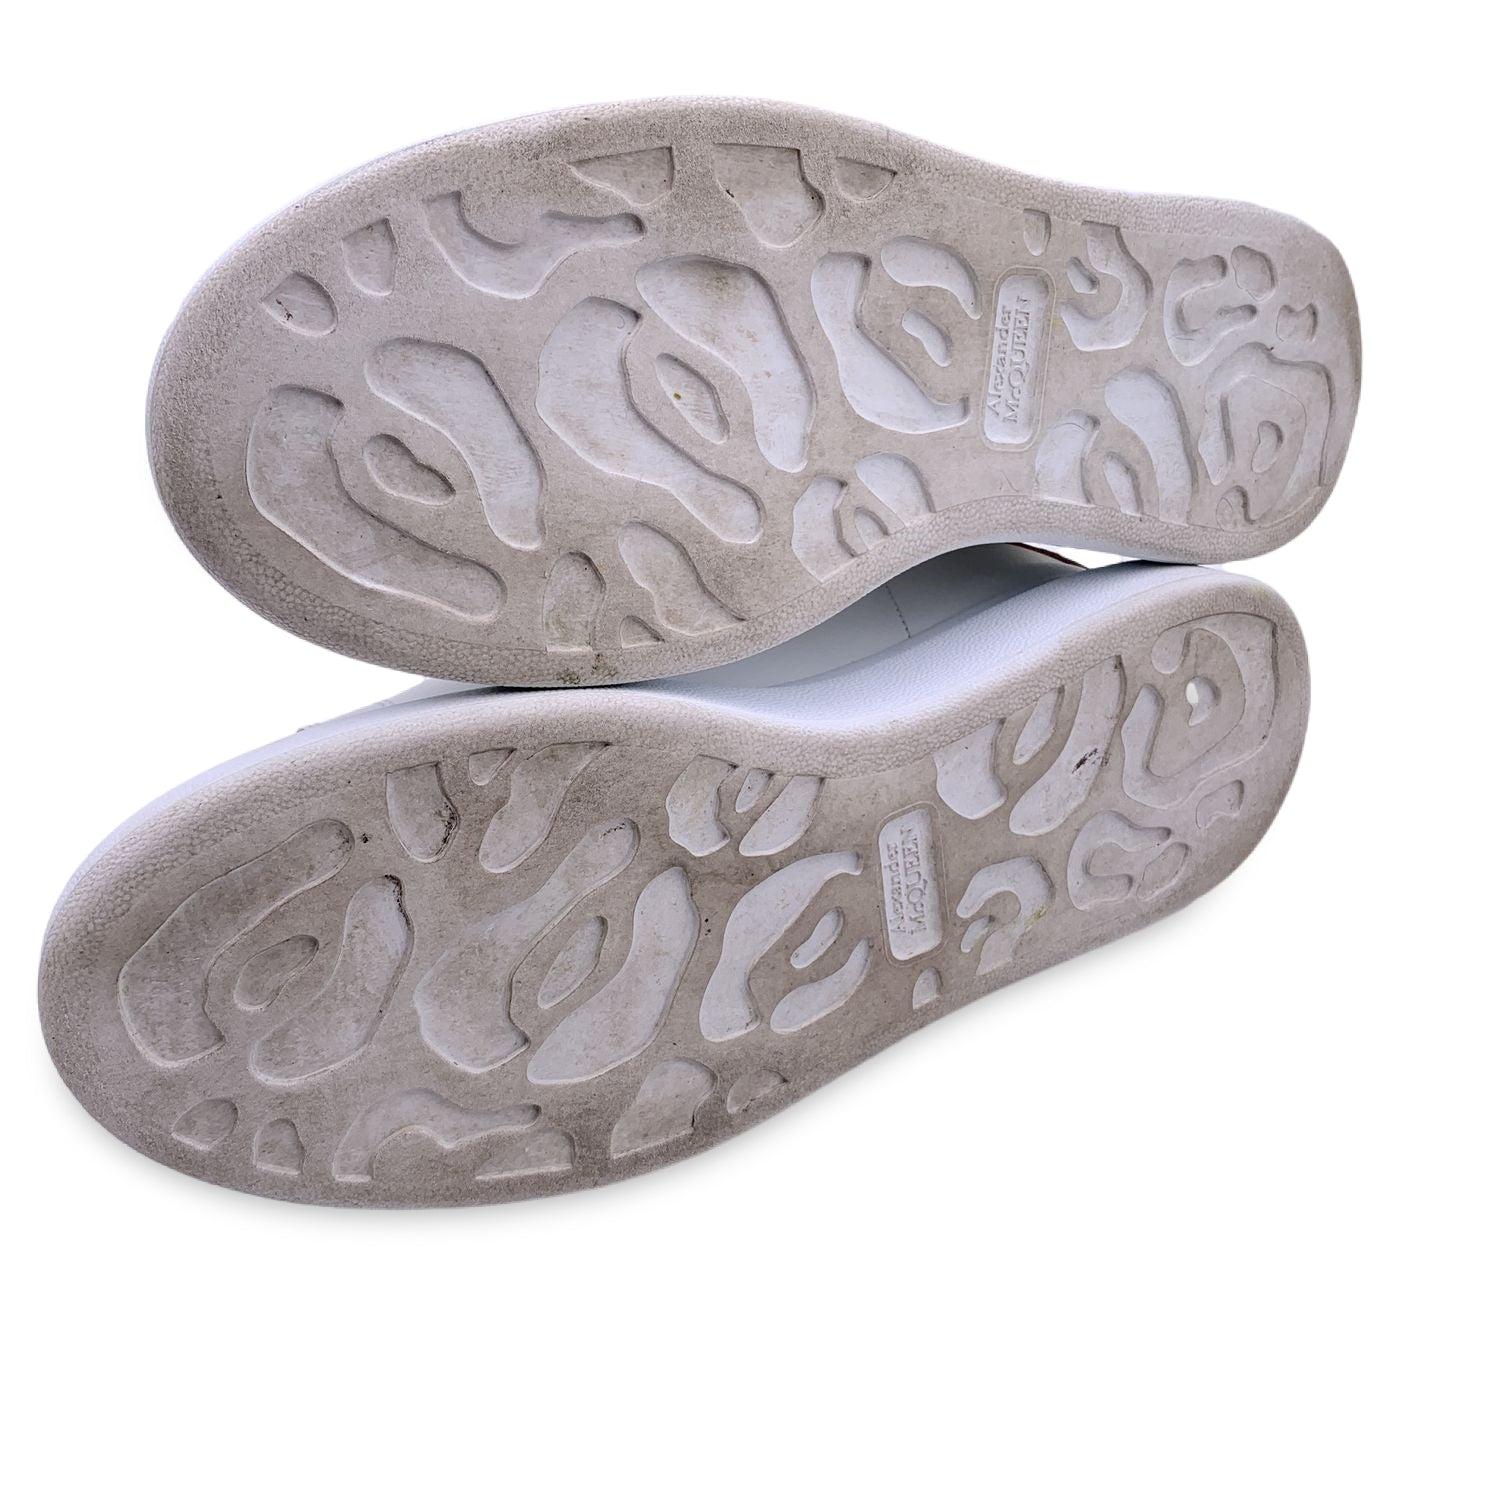 Gris Alexander McQueen - Chaussures de sport à lacets, or blanc, taille 40